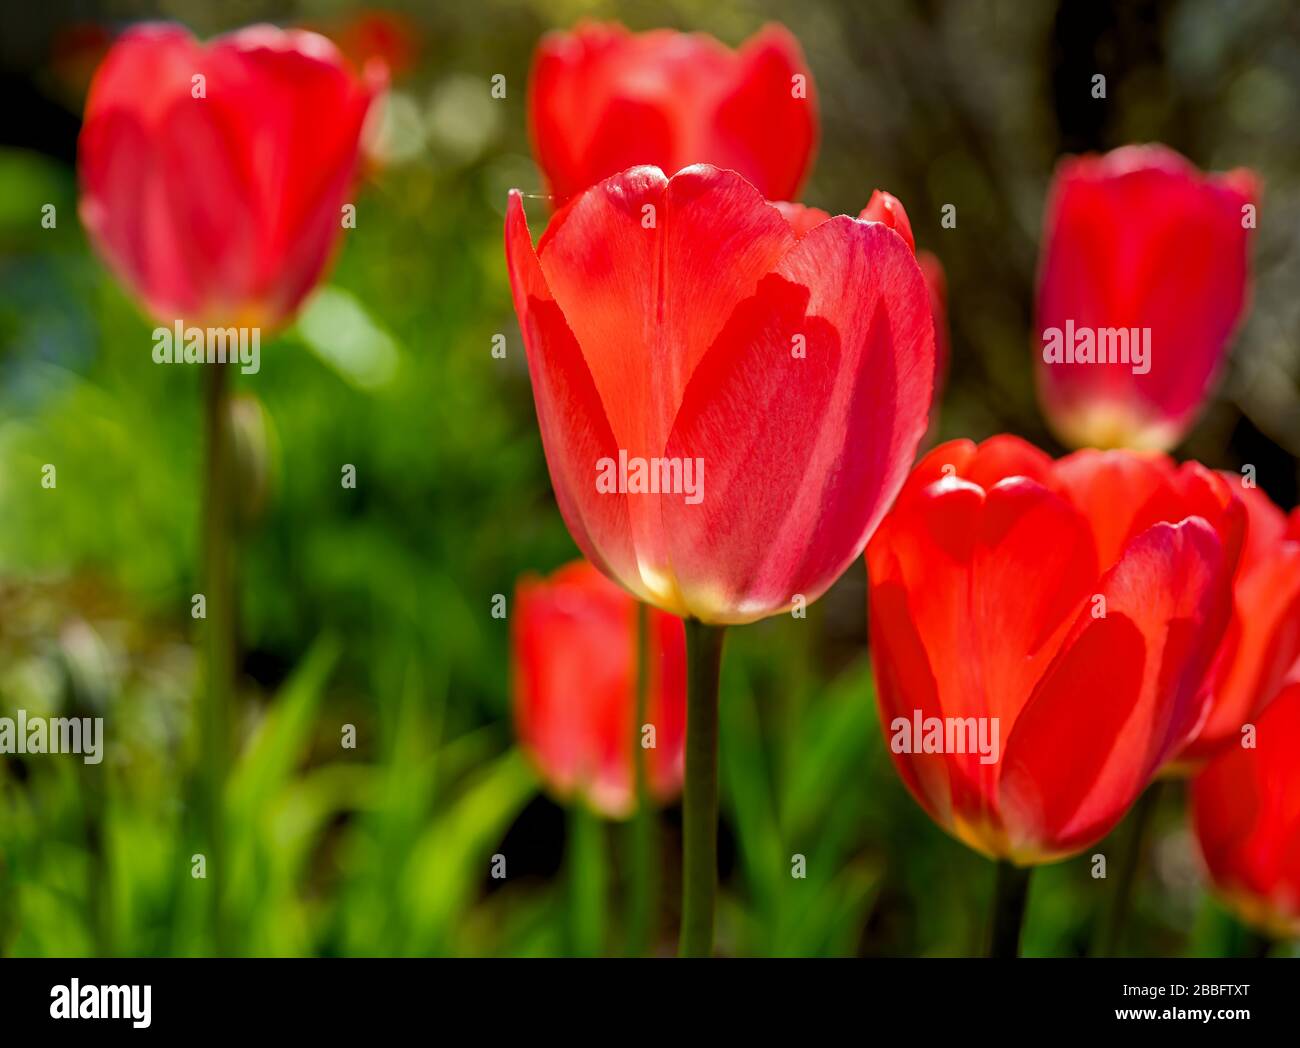 Vibrant garden tulips flowering in the spring garden,. Stock Photo